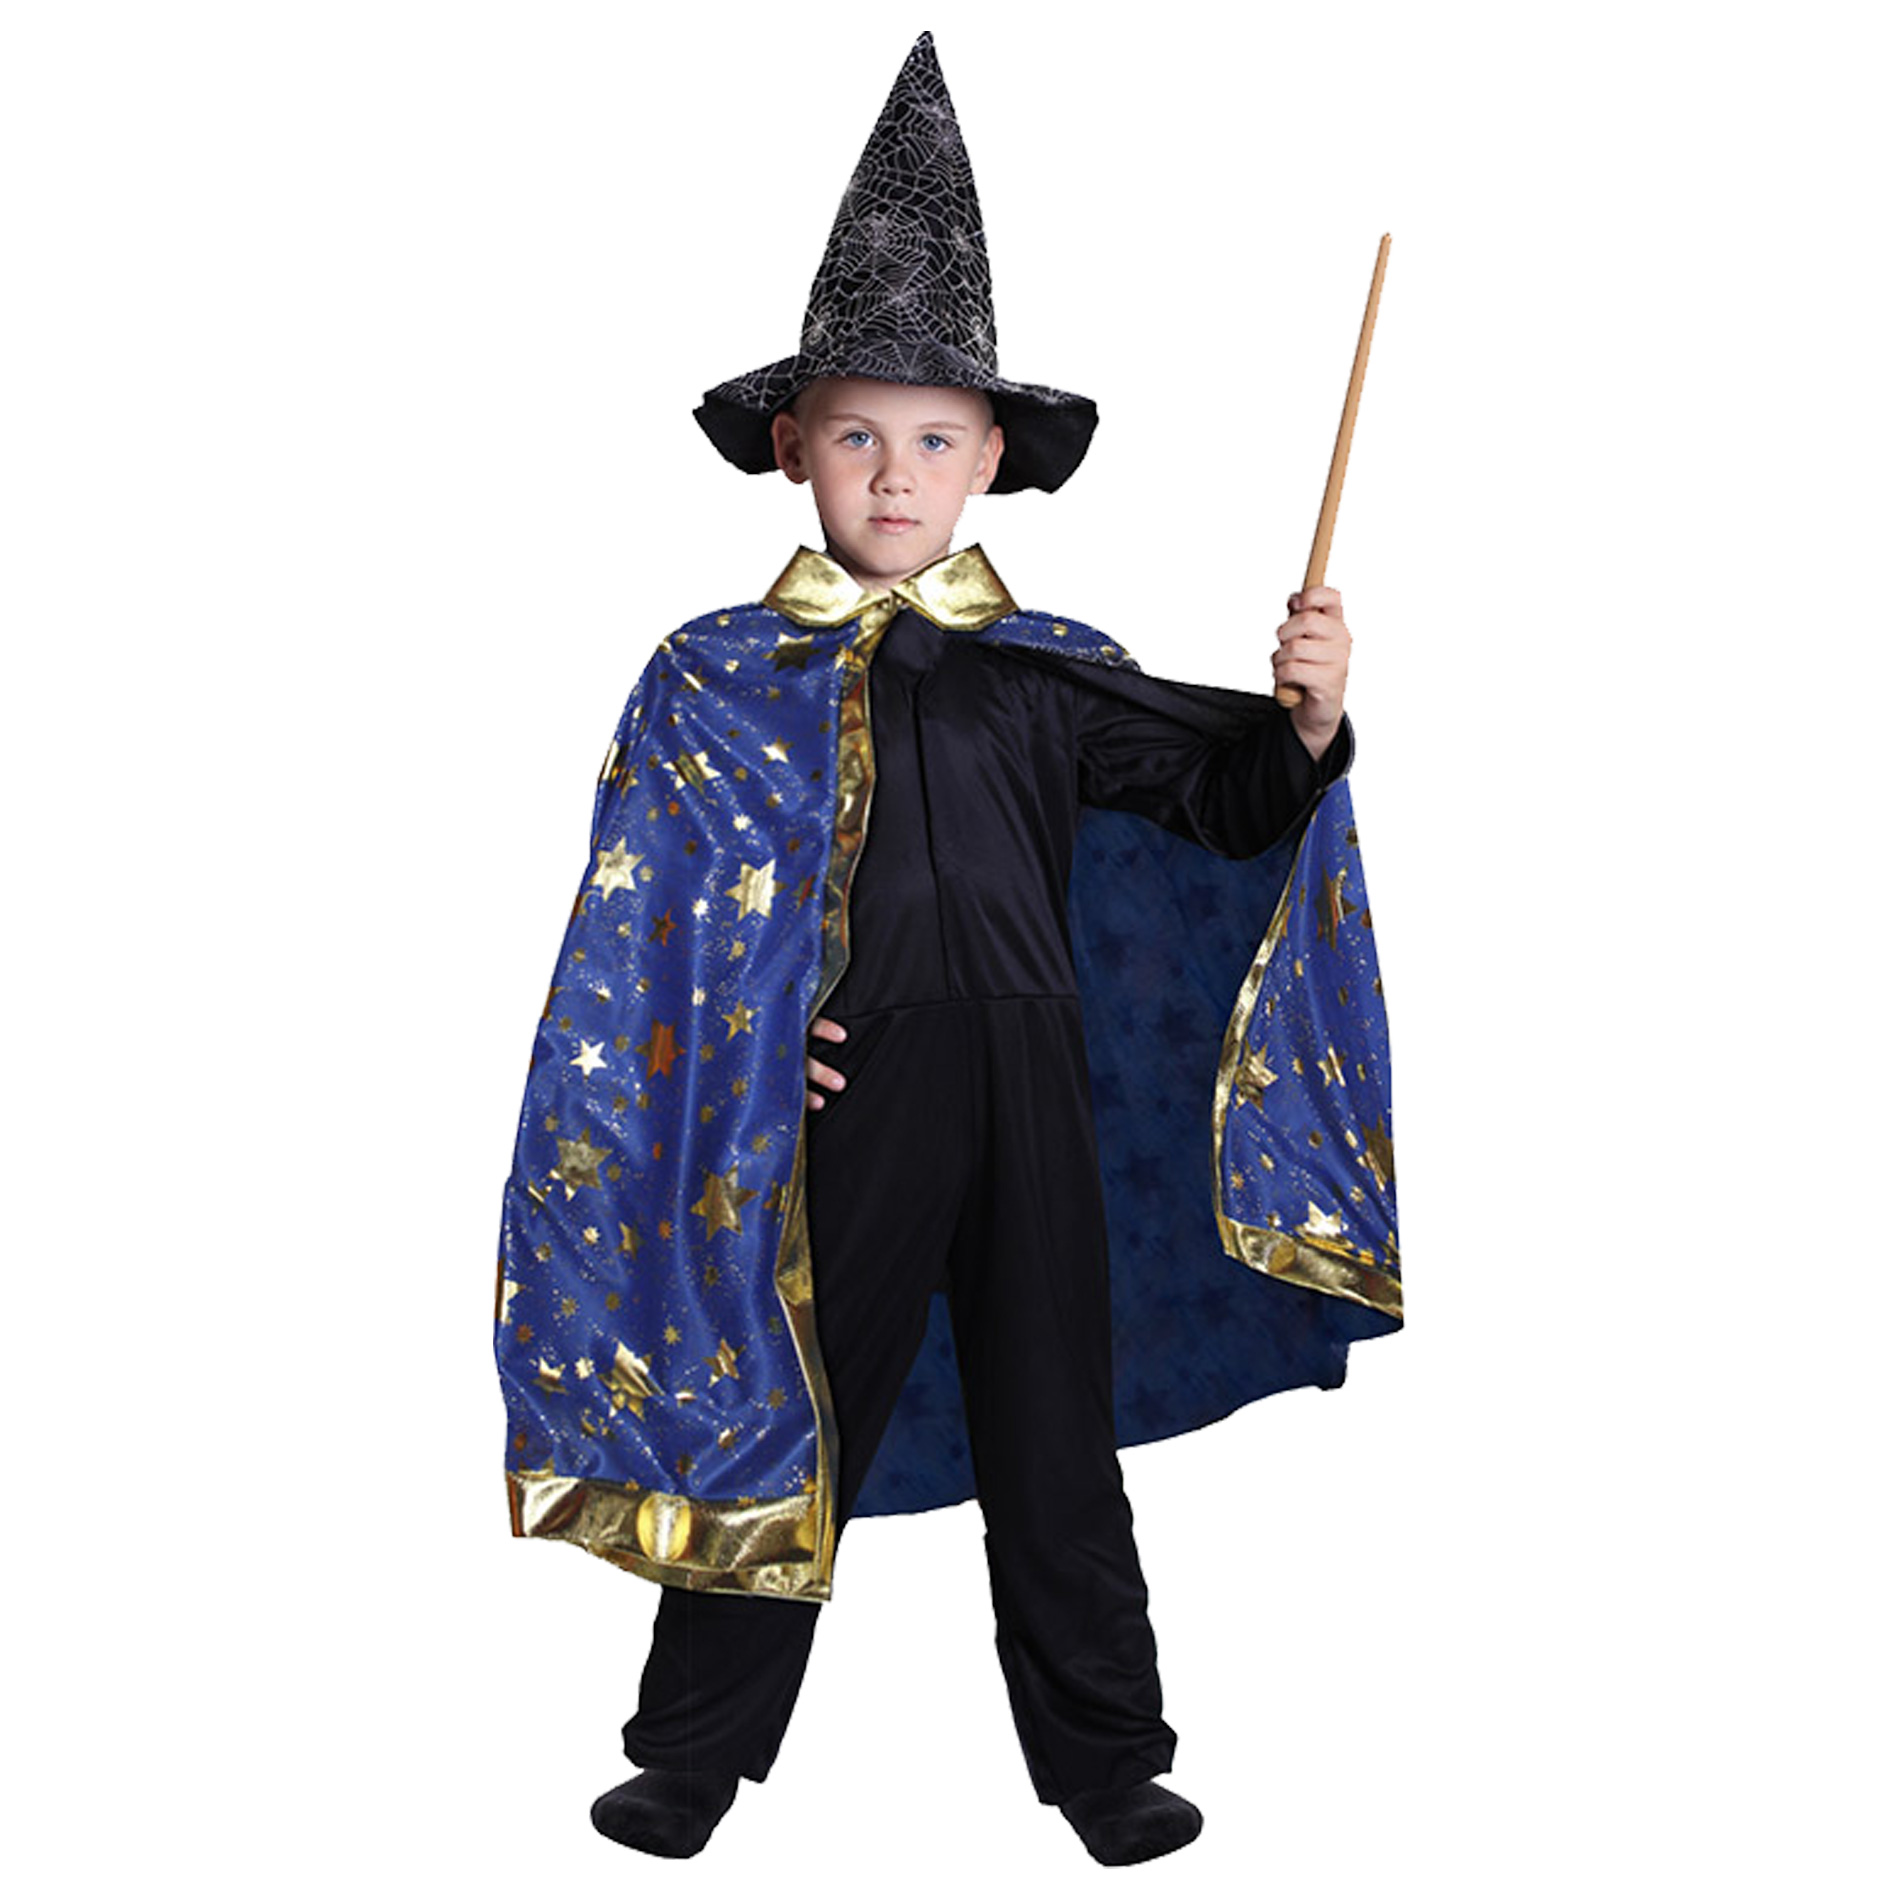 Dětský kouzelnický modrý plášť s hvězdami čarodějnice / Halloween